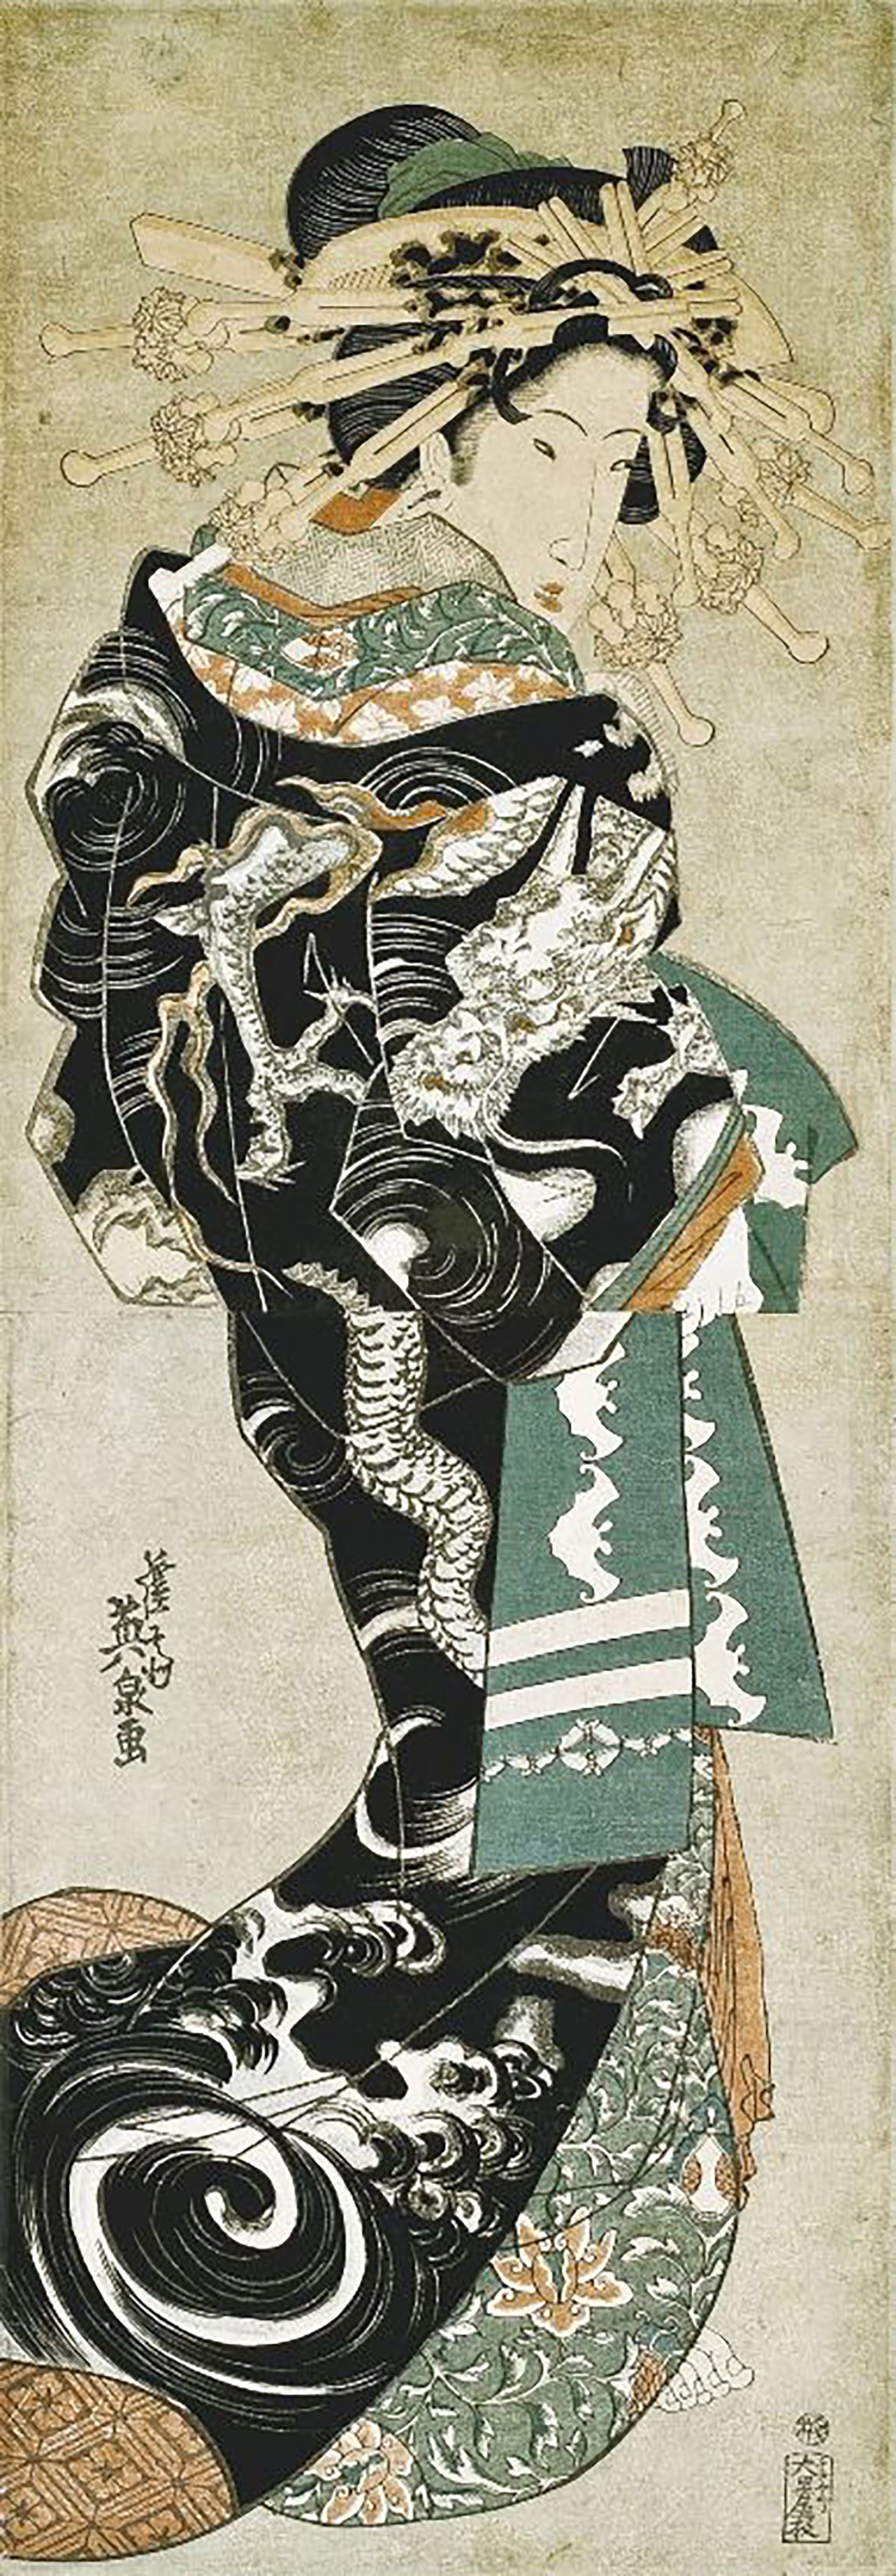  “Cortesana vistiendo un uchikake con un diseño de unryu”, de Keisai Eisen 